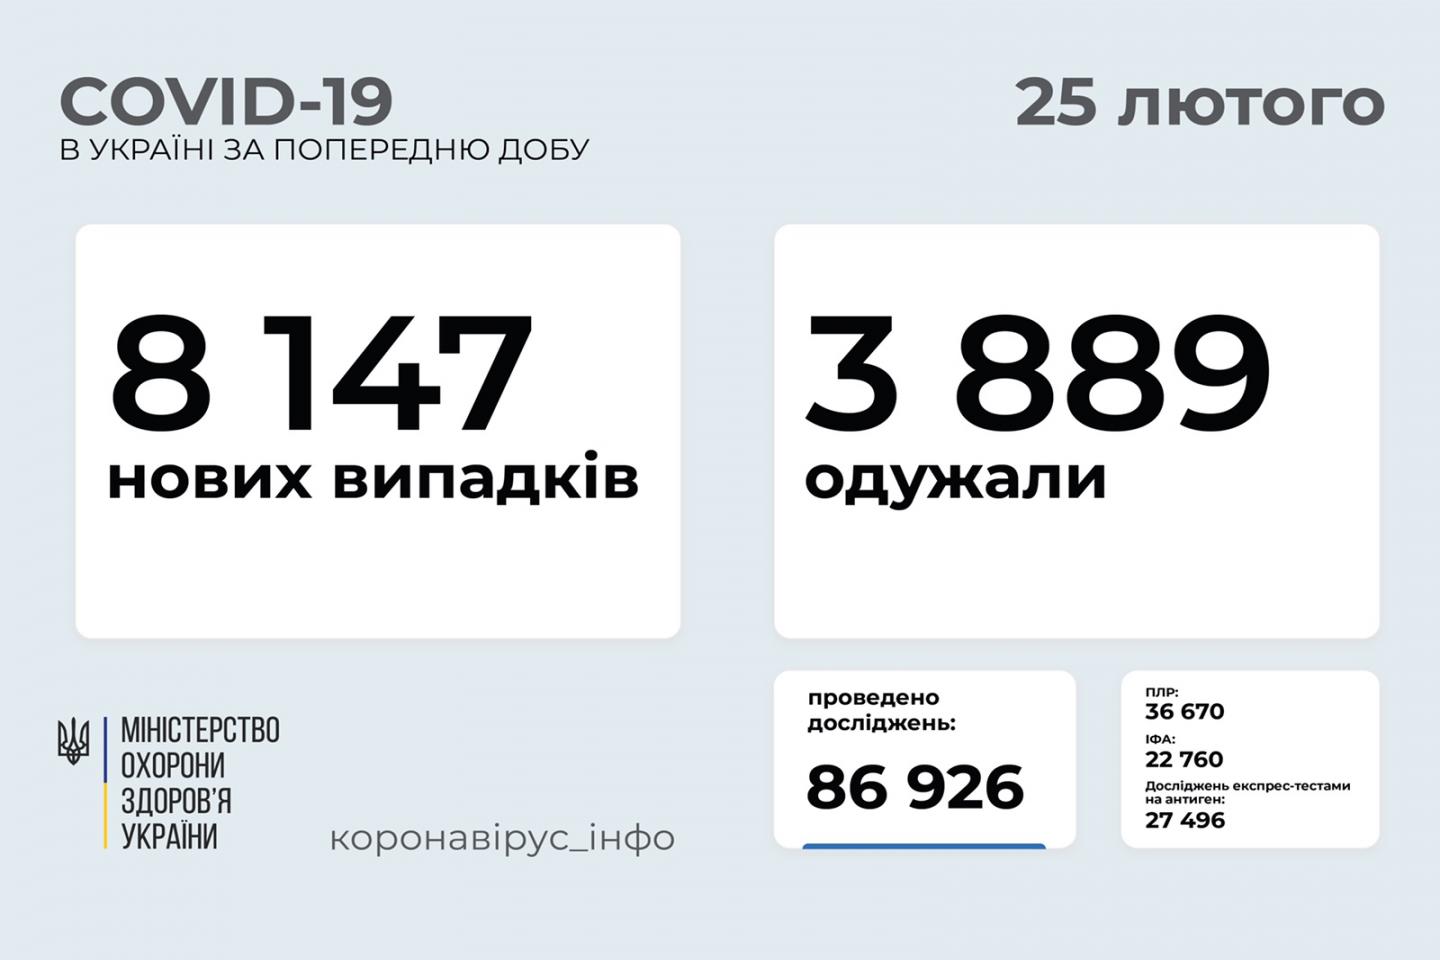 http://dunrada.gov.ua/uploadfile/archive_news/2021/02/25/2021-02-25_6117/images/images-56964.jpg